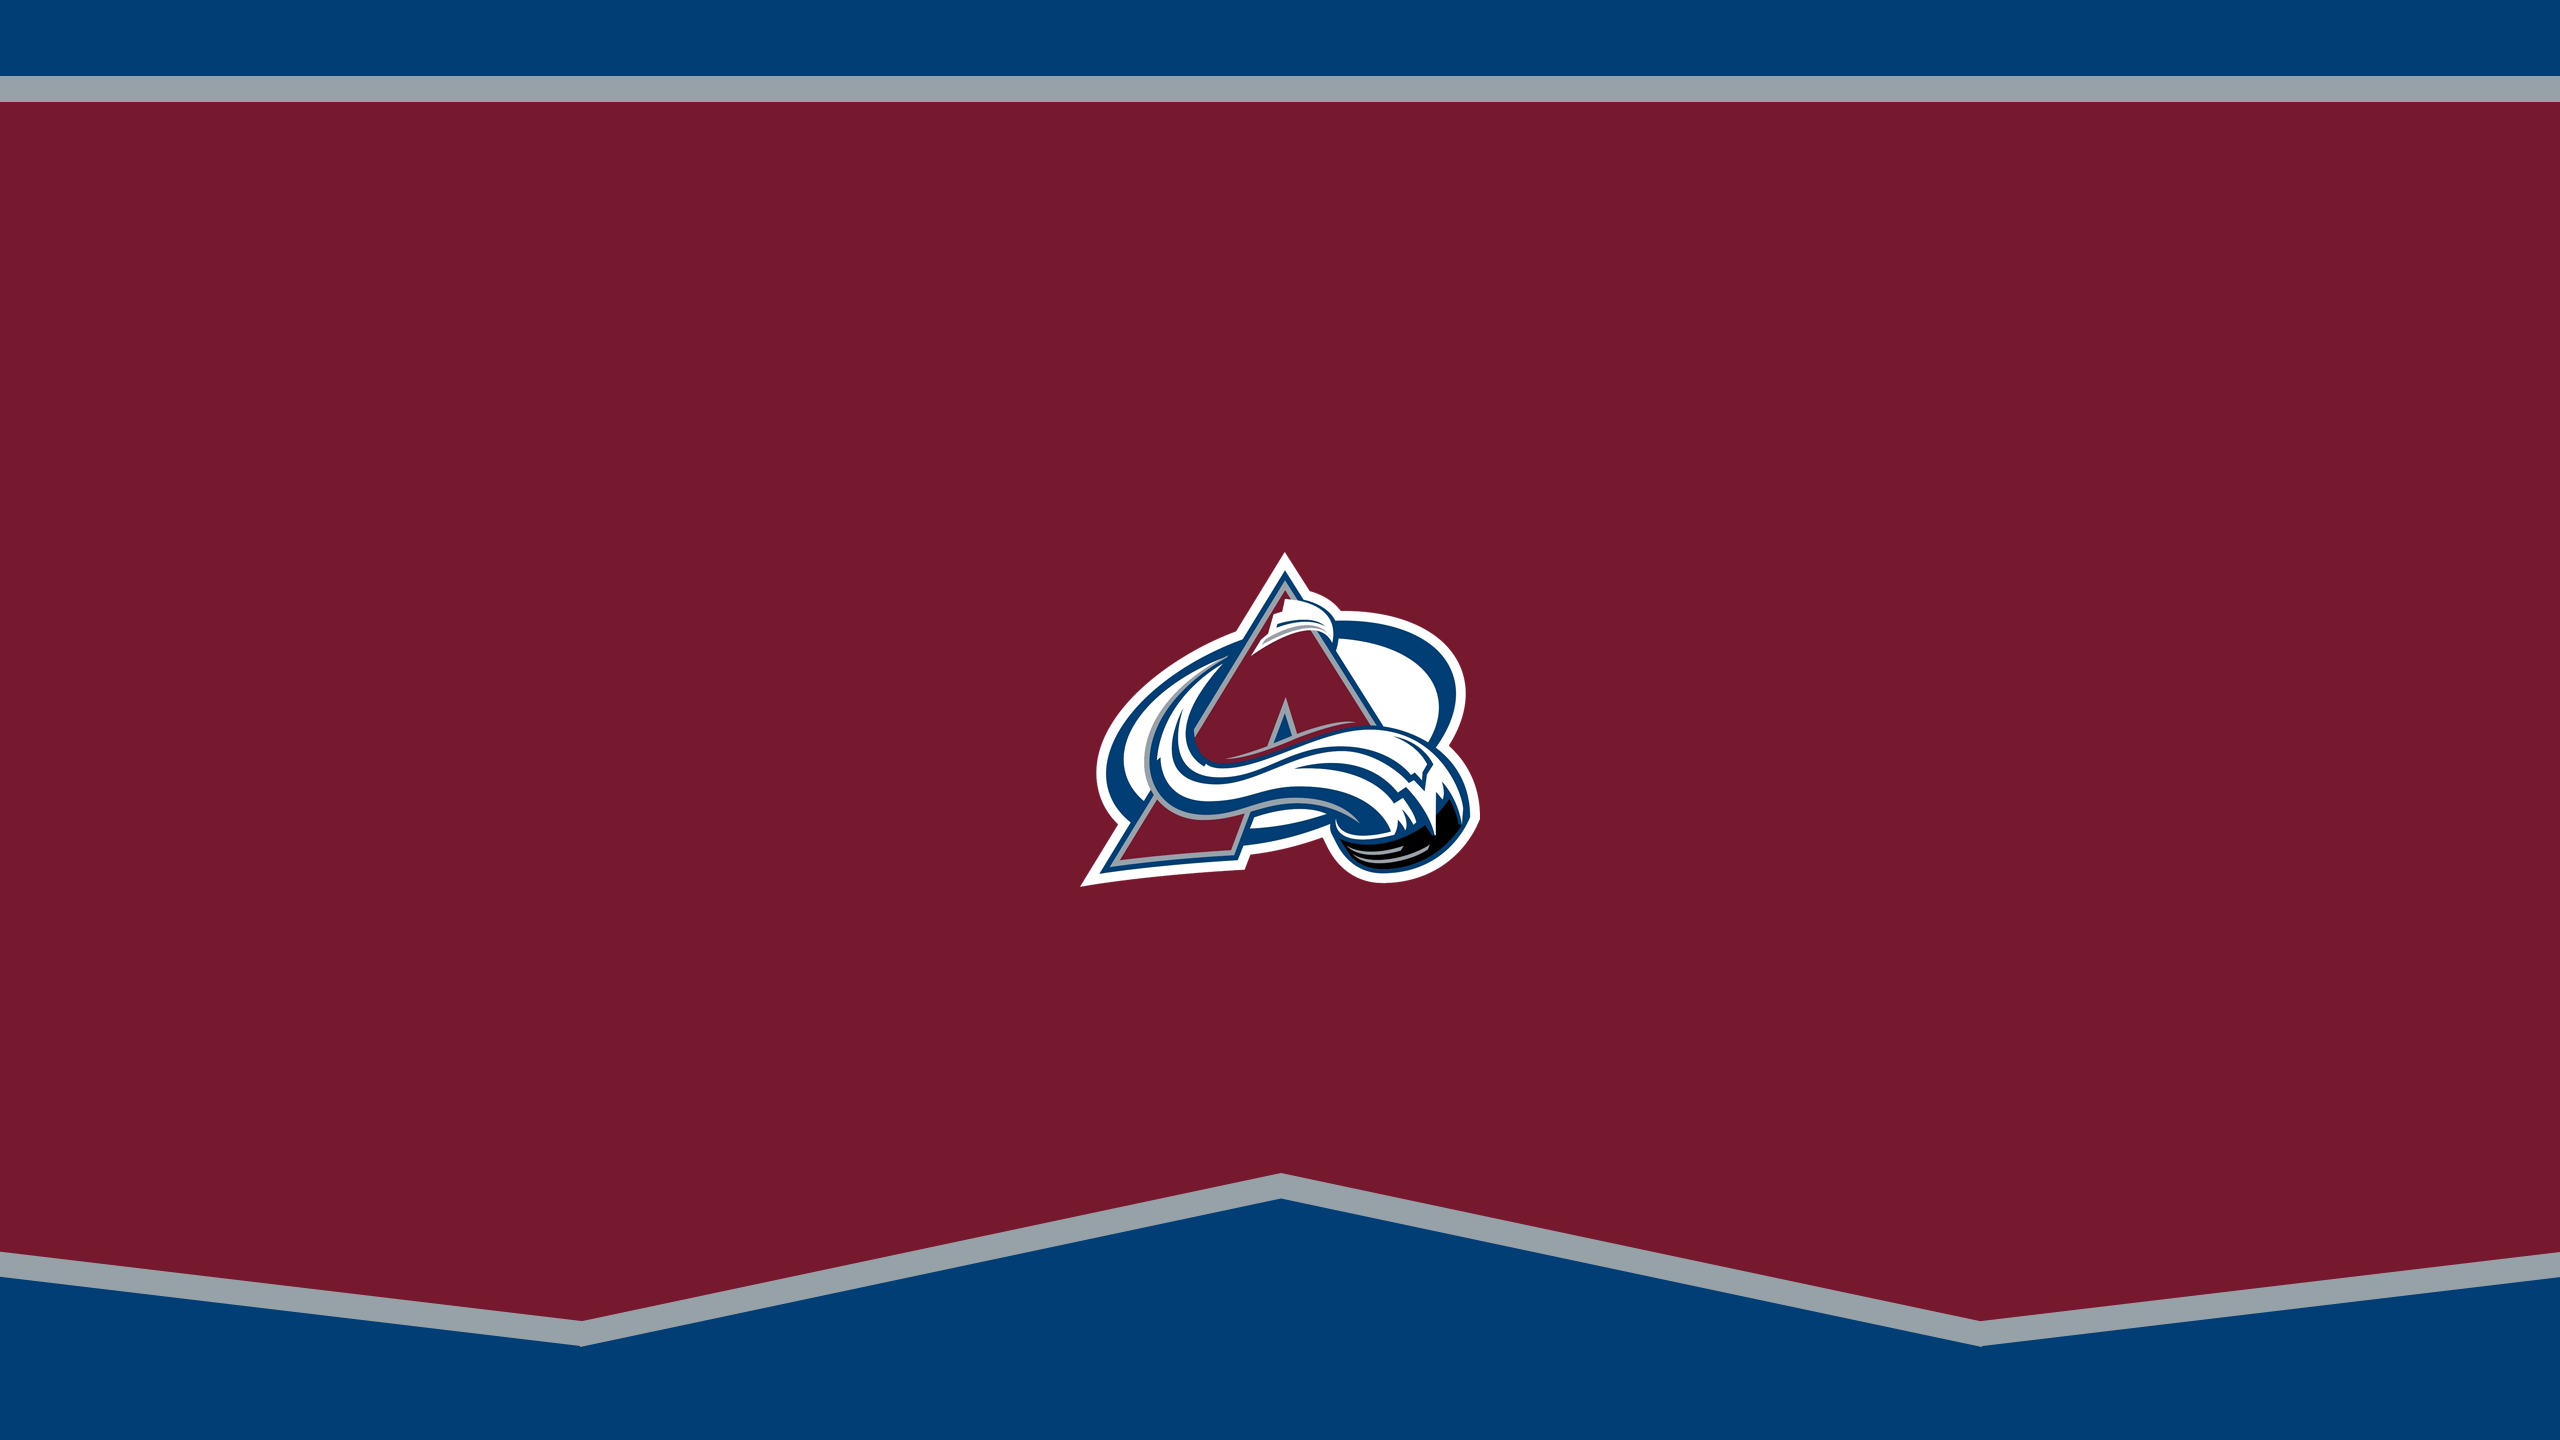 Colorado Avalanche - NHL - Square Bettor